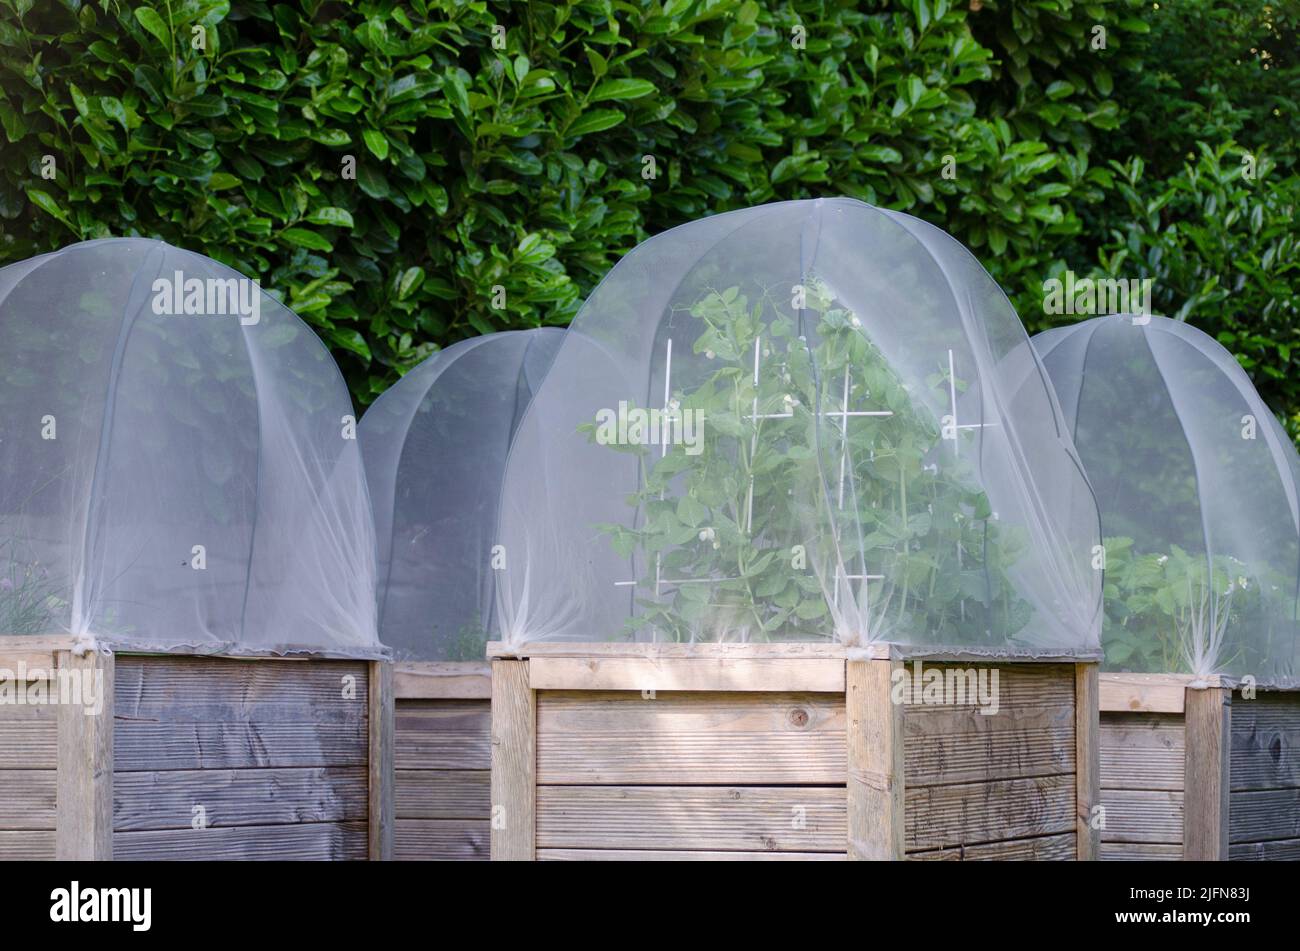 Gruppo di letti rialzati in giardino. Le coperture proteggono le piante contro la peste. I piselli e le fragole dello zucchero si sviluppano nei letti. Foto Stock